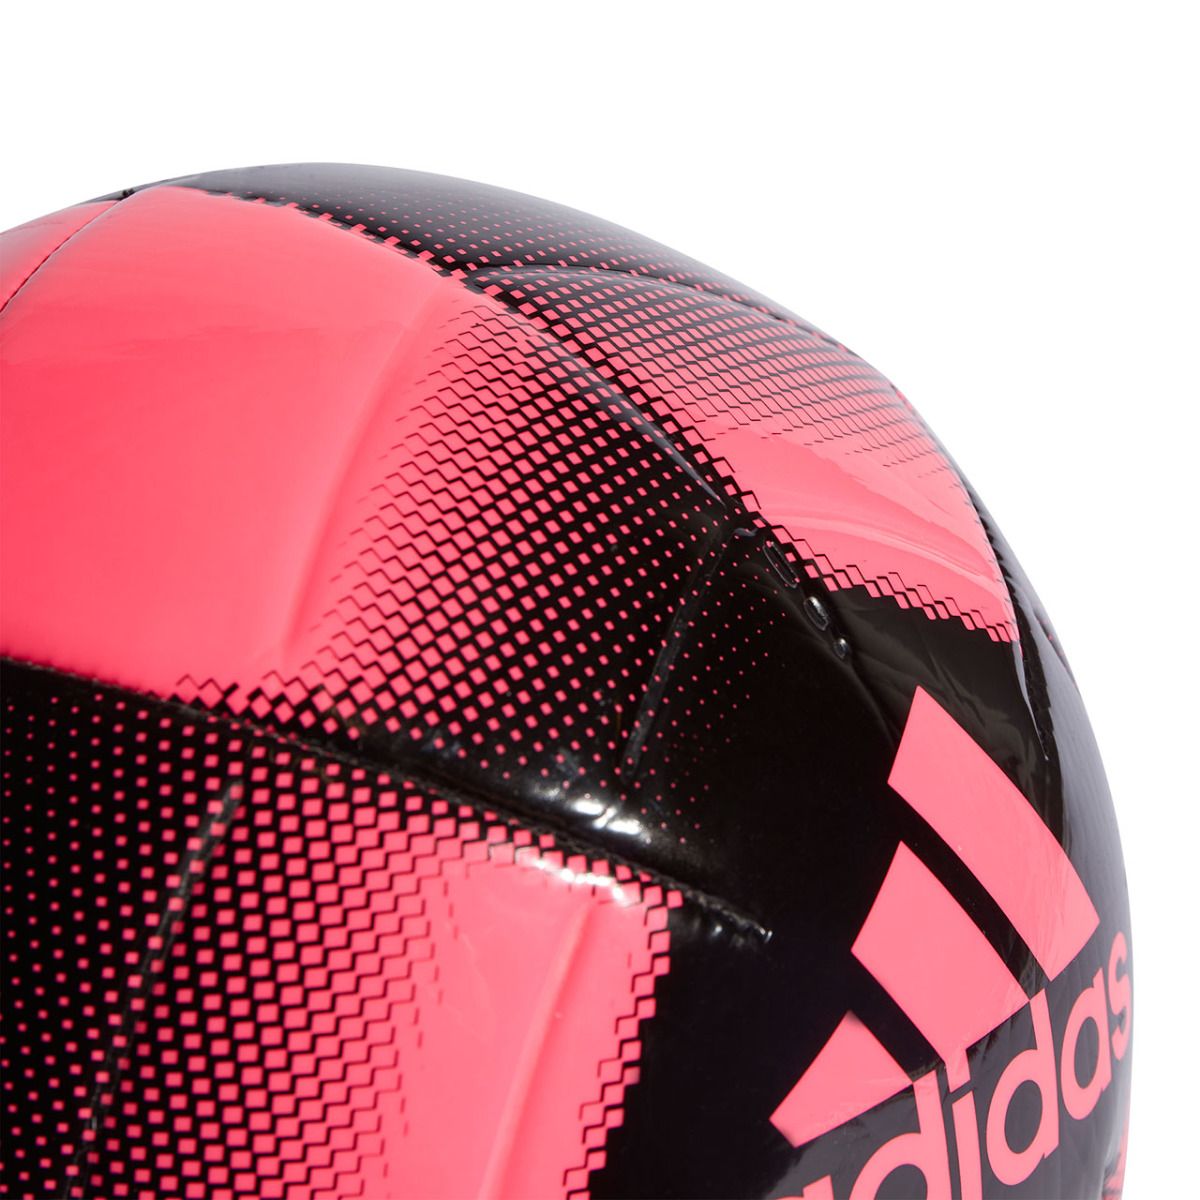 adidas Fotbalový míč EPP Club IA0965